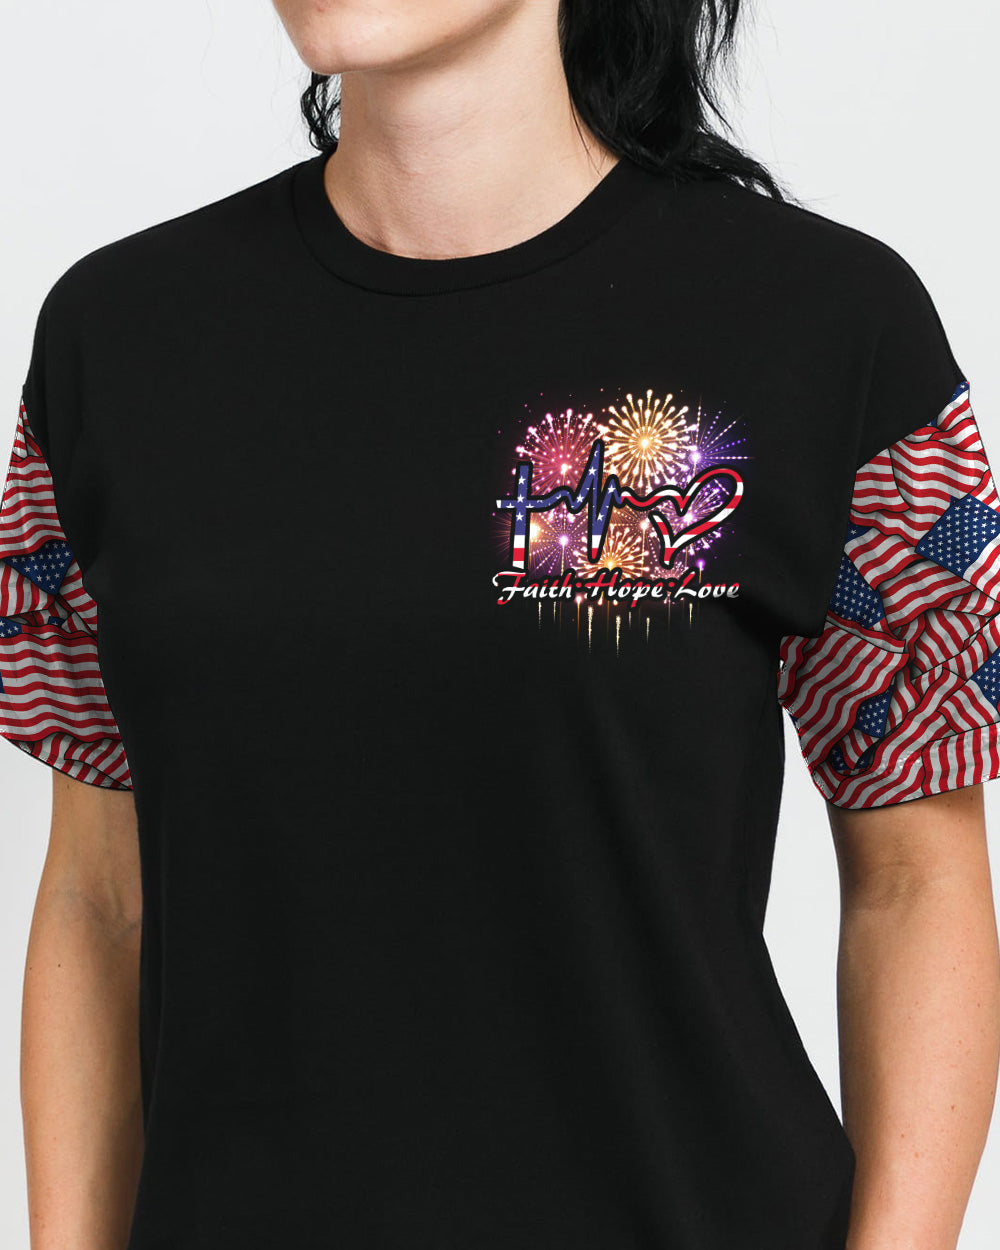 One Nation Under God Cross Fireworks Women's Christian Tshirt